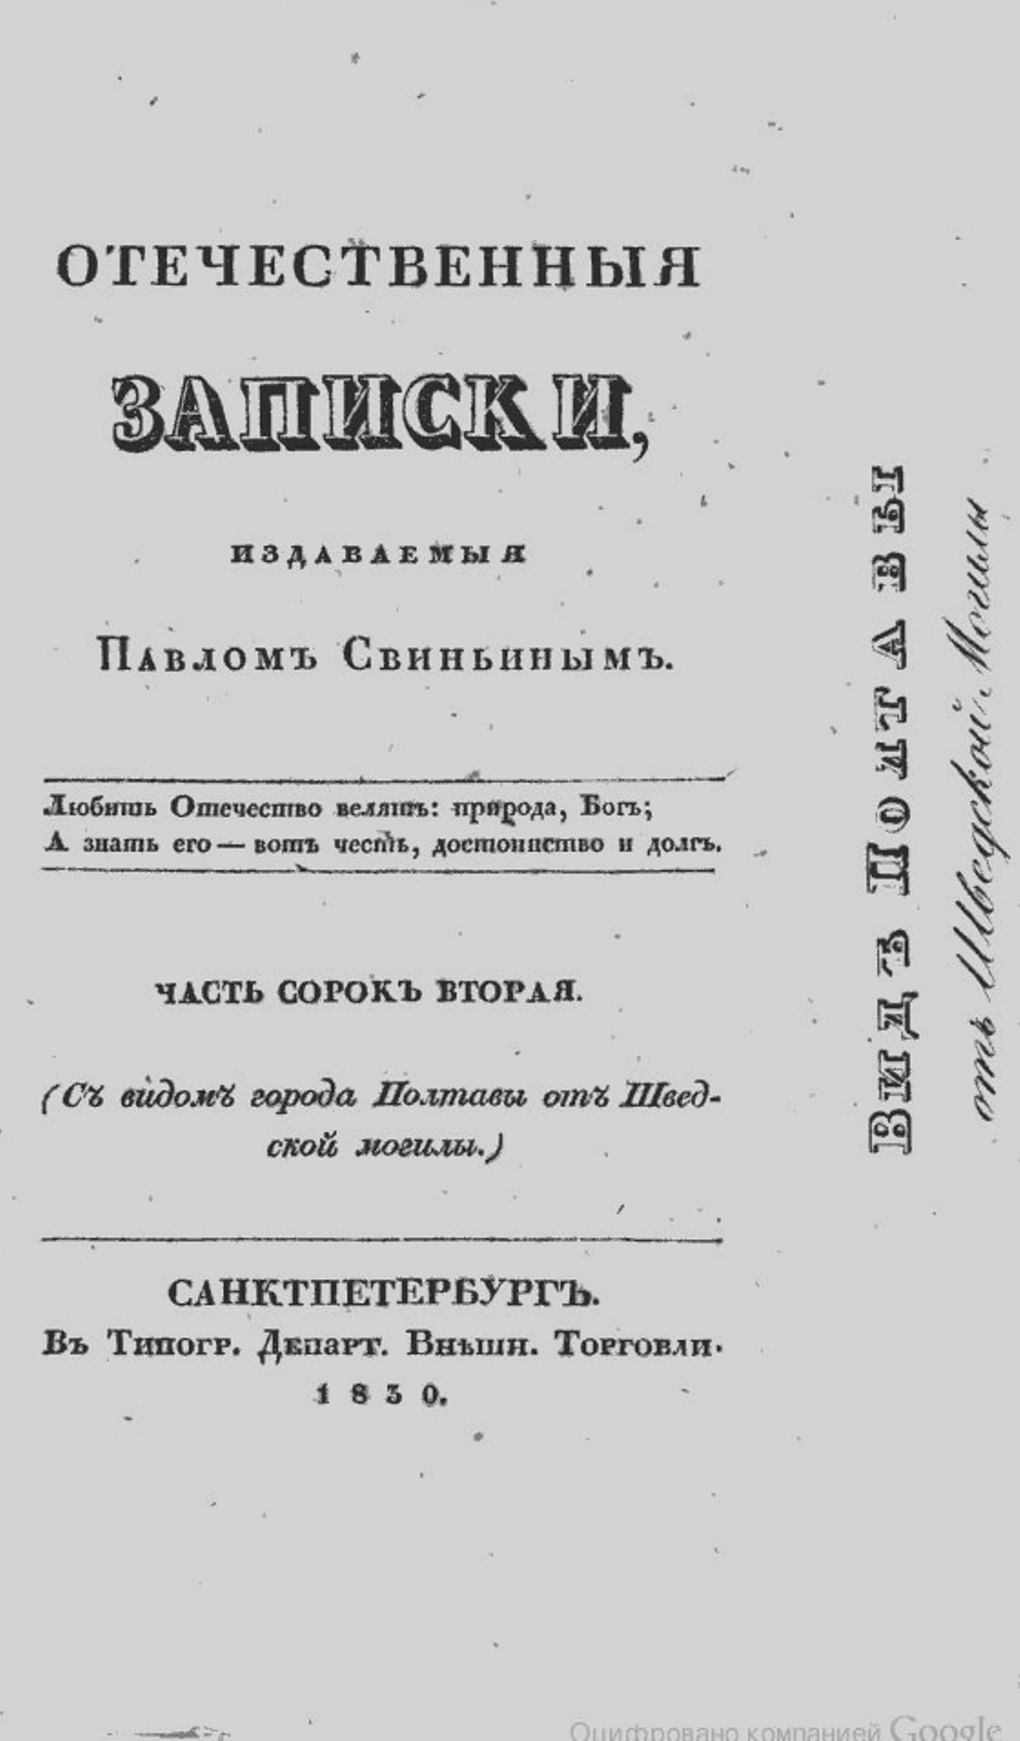 Титульный лист журнала «Отечественные записки». Часть сорок вторая. 1830 год. Фотография: wikimedia.org